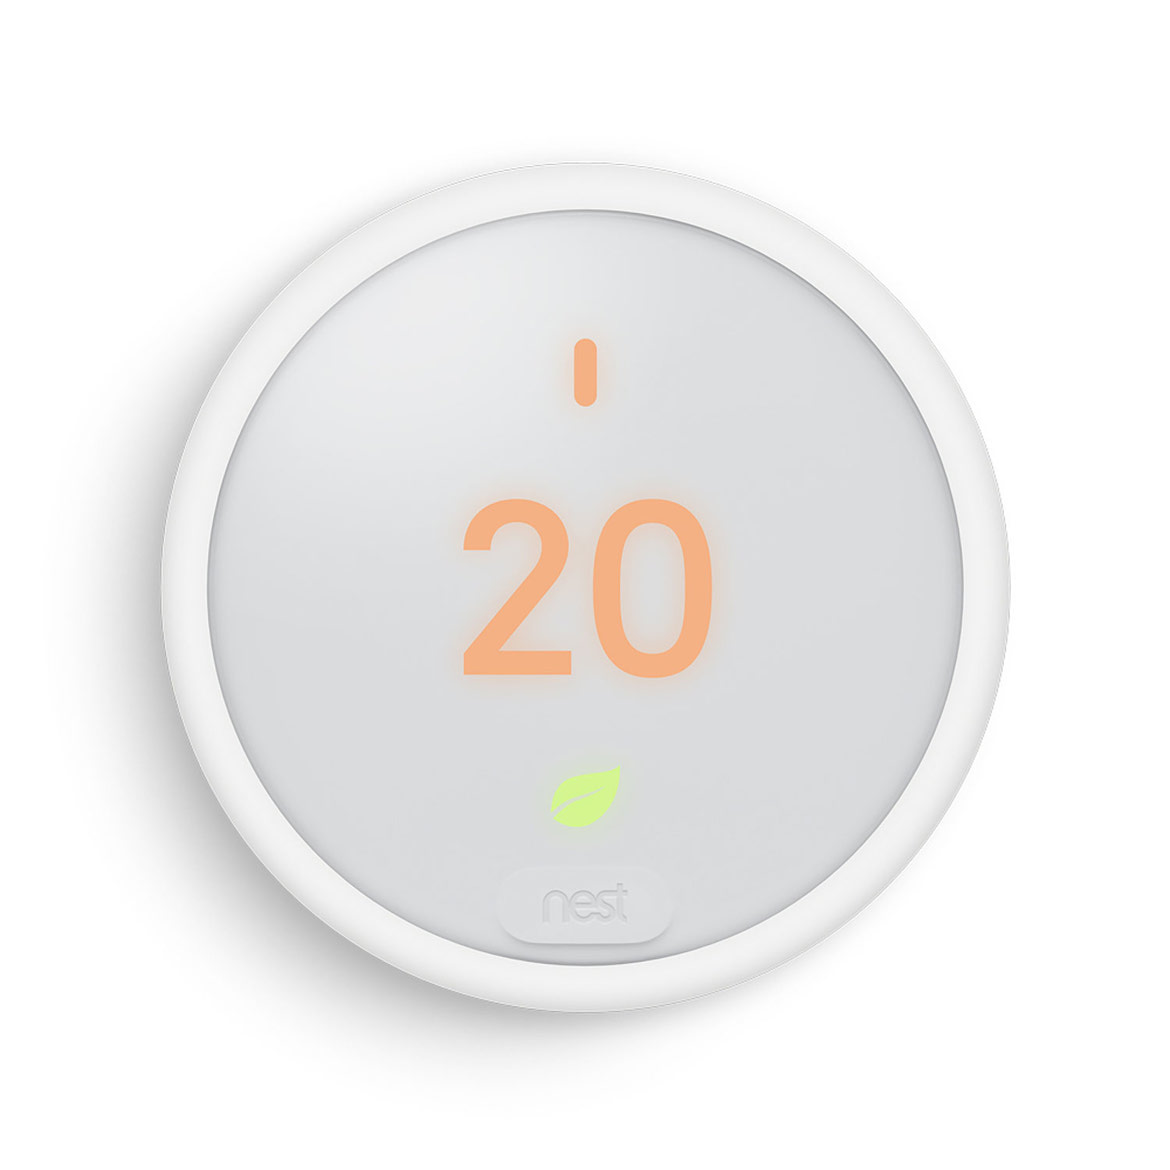 Nest E Smart Thermostat